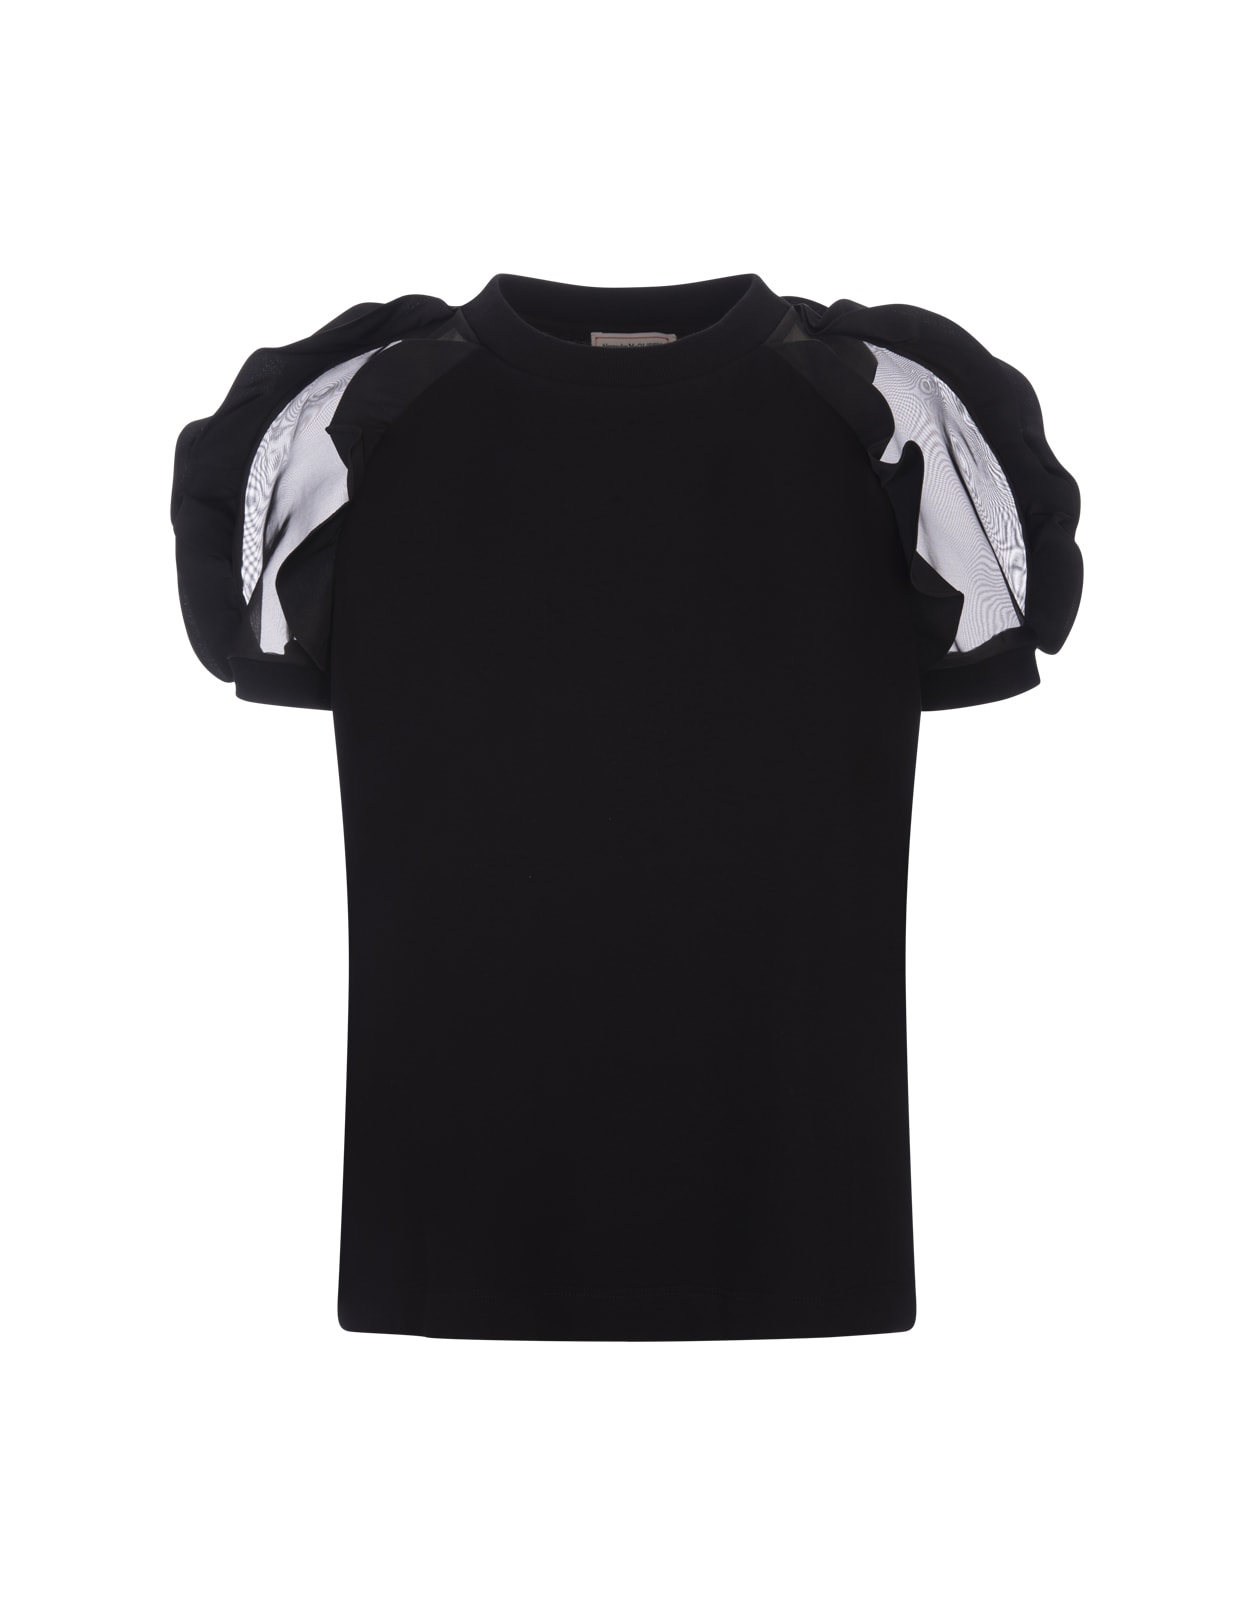 Alexander Mcqueen Black T-shirt With Ruffles Detail